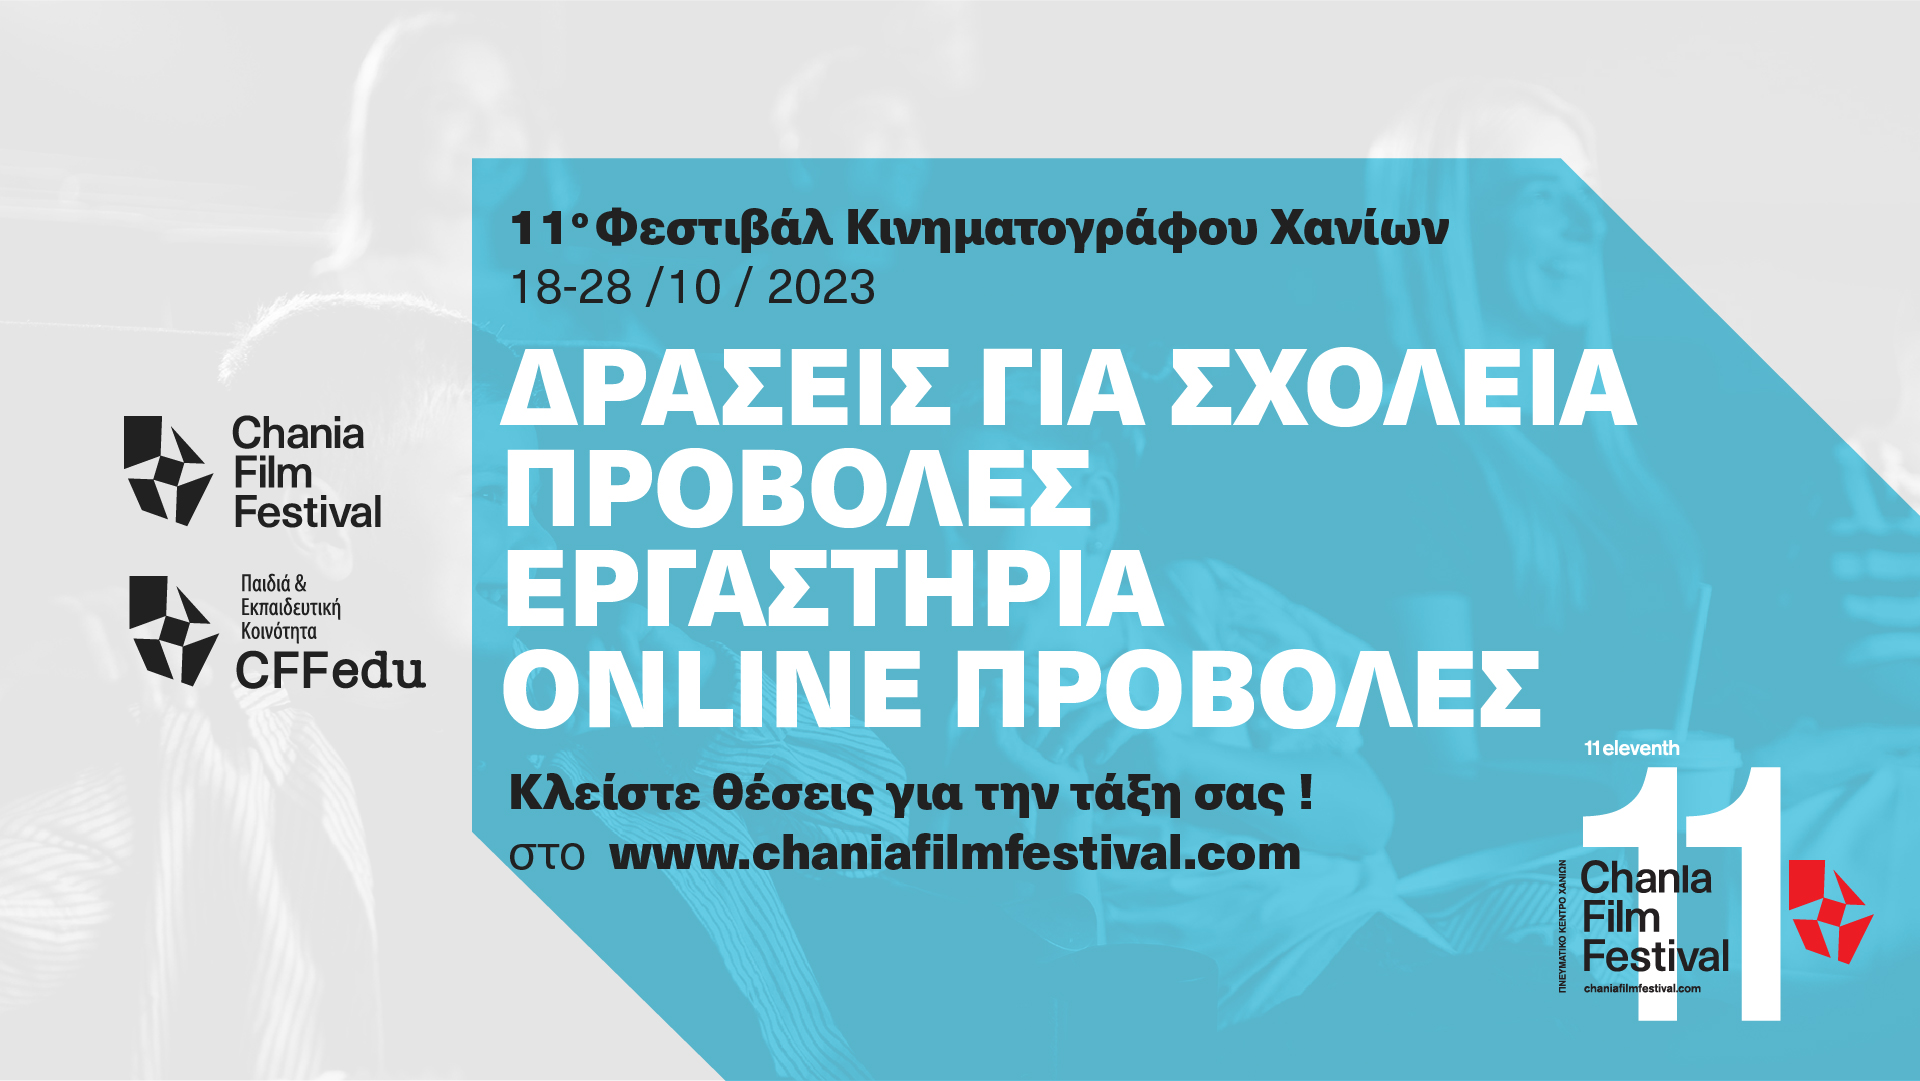 Θέμα: ΔΩΡΕΑΝ Συμμετοχή σχολείων και εκπαιδευτικών στις δράσεις του 11ου Φεστιβάλ Κινηματογράφου Χανίων / Chania Film Festival (CFF) που θα πραγματοποιηθούν από τις 18 Οκτωβρίου έως και τις 28 Οκτωβρίου 2023 , στο Πνευματικό Κέντρο Χανίων και online Θα θέλαμε να σας ενημερώσουμε ότι είμαστε στην τελική ευθεία για την πραγματοποίηση του 11ου Φεστιβάλ Κινηματογράφου Χανίων / Chania Film Festival (CFF) και των εκπαιδευτικών του δράσεων (18-28 Οκτωβρίου 2023). Για μια ακόμη χρονιά στο πρόγραμμα του Φεστιβάλ Κινηματογράφου Χανίων υπάρχει ένα μεγάλο τμήμα αφιερωμένο στην εκπαίδευση (μαθητές και εκπαιδευτικούς). Και σε αυτή τη διοργάνωση έχουμε προγραμματίσει προβολές και εργαστήρια για σχολεία - όπως πάντα - όλες οι δράσεις είναι ΧΩΡΙΣ ΚΑΜΙΑ ΟΙΚΟΝΟΜΙΚΗ ΥΠΟΧΡΕΩΣΗ ΤΩΝ ΣΥΜΜΕΤΕΧΟΝΤΩΝ. Στο πλαίσιο αυτό, τα σχολεία, μπορούν να συμμετάσχουν σε πρωινές προβολές με τμήματα τους, τα οποία θα προσέρχονται στο Πνευματικό Κέντρο Χανίων και θα παρακολουθούν τις προβολές. Επίσης μπορούν να συμμετάσχουν σε εργαστήρια ειδικά σχεδιασμένα για μαθητές και εκπαιδευτικούς που γίνονται τις πρωινές ώρες στο Πνευματικό Κέντρο Χανίων. Με βάση τα παραπάνω παρακαλούμε να ενημερώσετε τις σχολικές μονάδες για να δηλώσουν τη ΔΩΡΕΑΝ συμμετοχή των σχολείων τους. Πληροφορίες για τις ταινίες (ημέρες και ώρες προβολής) μπορείτε να βρείτε στη διεύθυνση: https://chaniafilmfestival.com/school-labs23/school-screenings23/ Επίσης για τα εργαστήρια στην διεύθυνση : https://chaniafilmfestival.com/school-labs23/ergasthria-gia-sxoleia-cff11/ Επίσης δίνεται η δυνατότητα για να παρακολουθήσετε ένα συγκεκριμένο αριθμό προβολών online από την τάξη σας δηλώνοντας σχετικά συμμετοχή στο https://chaniafilmfestival.com/online-provoles-gia-sxoleia-cff11/ Στις παραπάνω διευθύνσεις, θα βρείτε και τις ηλεκτρονικές φόρμες υποβολής αίτησης συμμετοχής στις προβολές και στα εργαστήρια. Σημειώνουμε ότι οι ΑΙΤΗΣΕΙΣ γίνονται ΜΟΝΟ ΗΛΕΚΤΡΟΝΙΚΑ και ΘΑ ΤΗΡΗΘΕΙ ΑΠΟΛΥΤΗ ΣΕΙΡΑ ΠΡΟΤΕΡΑΙΟΤΗΤΑΣ. Επίσης στο πλαίσιο του 11ου Φεστιβάλ Κινηματογράφου Χανίων έχουν σχεδιαστεί εννέα (14) εργαστήρια και masterclasses για ενήλικες, μέρος των οποίων αφορά την εκπαιδευτική κοινότητα. Πληροφορίες και δηλώσεις συμμετοχής στο https://chaniafilmfestival.com/masterclass2023/ Σημειώνουμε τέλος ότι τις επόμενες μέρες θα ανακοινωθεί το αναλυτικό πρόγραμμα του 11ου Φεστιβάλ Κινηματογράφου Χανίων / Chania Film Festival, το οποίο θα πραγματοποιηθεί από την Τετάρτη 18 έως και το Σάββατο 28 Οκτωβρίου 2023, στο Πνευματικό Κέντρο Χανίων και online μέσα από το www.chaniafilmfestival.com. Το ημερήσιο πρόγραμμα προβολών καθώς και των παράλληλων δράσεων, θα αναρτηθεί στην ιστοσελίδα του Φεστιβάλ στην διεύθυνση: https://www.chaniafilmfestival.com . Επίσης στην ίδια διεύθυνση θα μπορείτε να βρείτε και τον κατάλογο του Φεστιβάλ, σε ηλεκτρονική μορφή. Σας περιμένουμε και σε αυτή τη διοργάνωση να γιορτάσουμε μαζί κινηματογραφικά ! Το 11ο Φεστιβάλ Κινηματογράφου Χανίων και τα Εκπαιδευτικά του Προγράμματα τελούν υπό την Αιγίδα: των Υπουργείων Πολιτισμού και Αθλητισμού Τουρισμού και του Ελληνικού Οργανισμού Τουρισμού Υποστηρίζονται από Βουλή των Ελλήνων Τον Ελληνικό Οργανισμό Τουρισμού Το Εθνικό Κέντρο Οπτικοακουστικών Μέσων και Επικοινωνίας Το Ελληνικό Κέντρο Κινηματογράφου Την Αντιπροσωπεία της Ευρωπαϊκής Επιτροπής στην Ελλάδα αποτελούν συνδιοργάνωση της Περιφέρειας Κρήτης, της Περιφερειακής Ενότητας Χανίων, των Δήμων Χανίων και Πλατανιά, της ΚΕΠΠΕΔΗΧ –ΚΑΜ και του Πνευματικού Κέντρου Χανίων, σχεδιάζονται και υλοποιούνται από την Πολιτιστική Εταιρεία Κρήτης, Πραγματοποιούνται με την οικονομική υποστήριξη του Υπουργείου Πολιτισμού και Αθλητισμού Χορηγοί #CFF11 COSMOTE Τράπεζα Χανίων Κρητικά Ακίνητα Samaria Χορηγός Ακτοπλοϊκών Μετακινήσεων : ANEK Lines BlueStar Ferries Χορηγός Αεροπορικών Μετακινήσεων : Aegean Airlines Χορηγός Τοπικών Μετακινήσεων: CarwizGr Ολες οι δράσεις του Φεστιβάλ Κινηματογράφου Χανίων είναι με Ελεύθερη Είσοδο καιεξασφαλίζεται η πρόσβαση σε ΑμεΑ. έχουν τη συνέργεια των σημαντικότερων φορέων του Κινηματογράφου, του Πολιτισμού και της Εκπαίδευσης. 11ο Φεστιβάλ Κινηματογράφου Χανίων / Chania Film Festival (CFF) 18 – 28 Οκτωβρίου 2023, στο Πνευματικό Κέντρο Χανίων και online στο http://www.chaniafilmfestival.com Ευχαριστούμε για τη Συνεργασία!!! Το Γραφείο Τύπου του 11ου Φεστιβάλ Κινηματογράφου Χανίων / ChaniaFilmFestival (CFF)